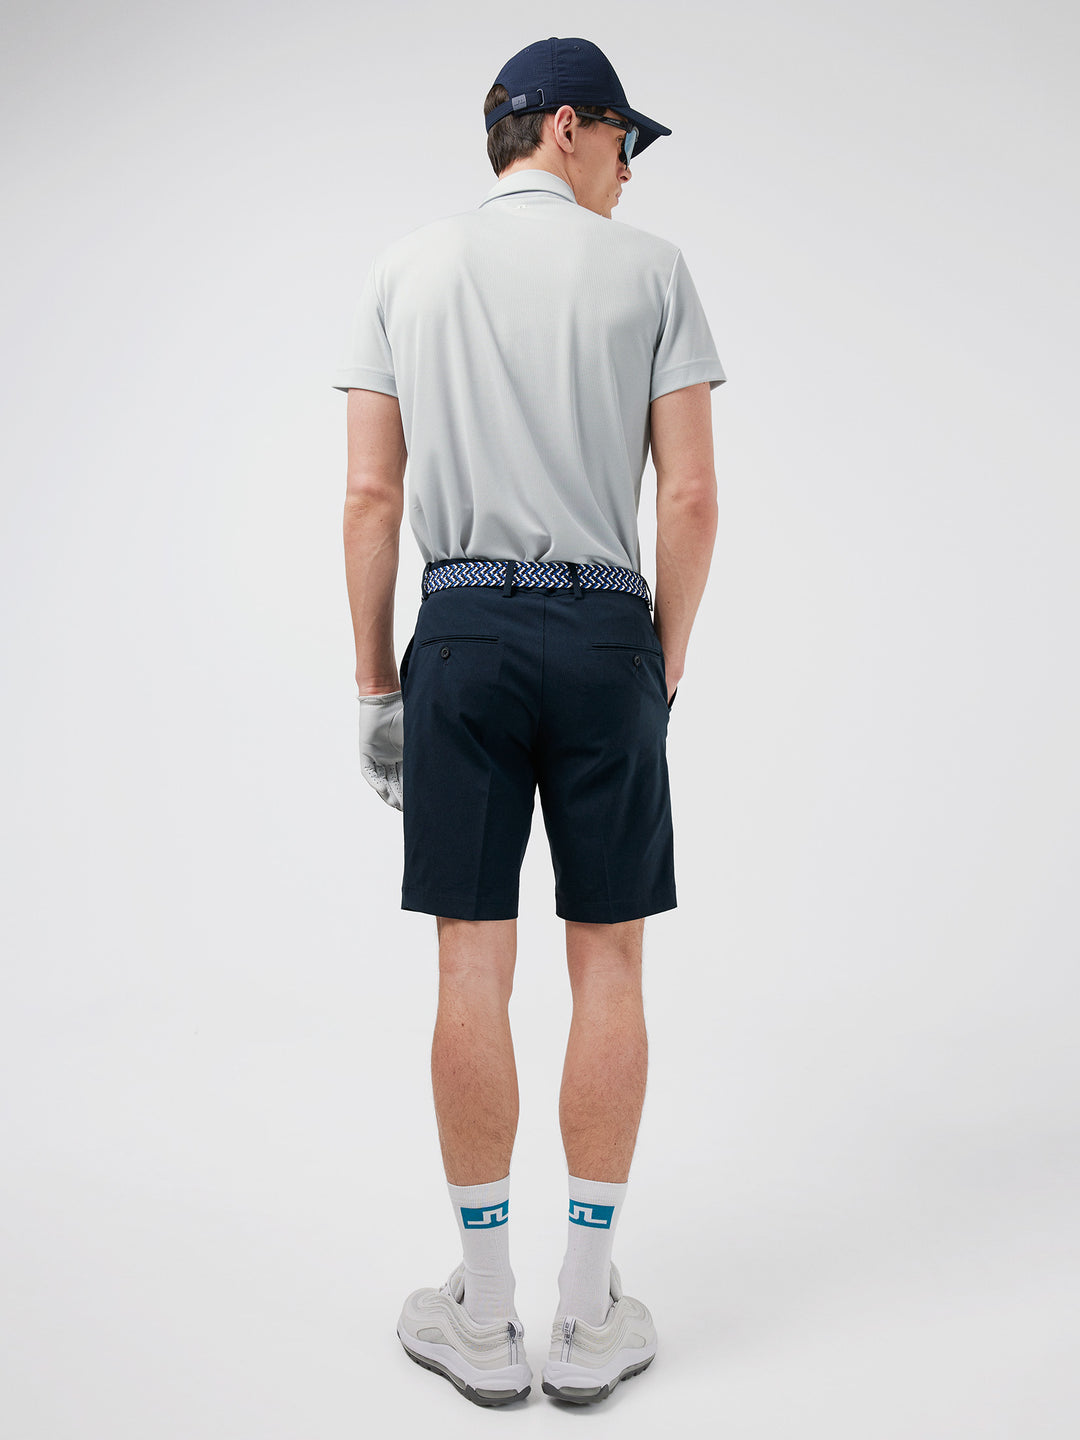 J.Lindeberg Mens Vent Tight Golf Shorts - JL NAVY - Golf Anything Canada